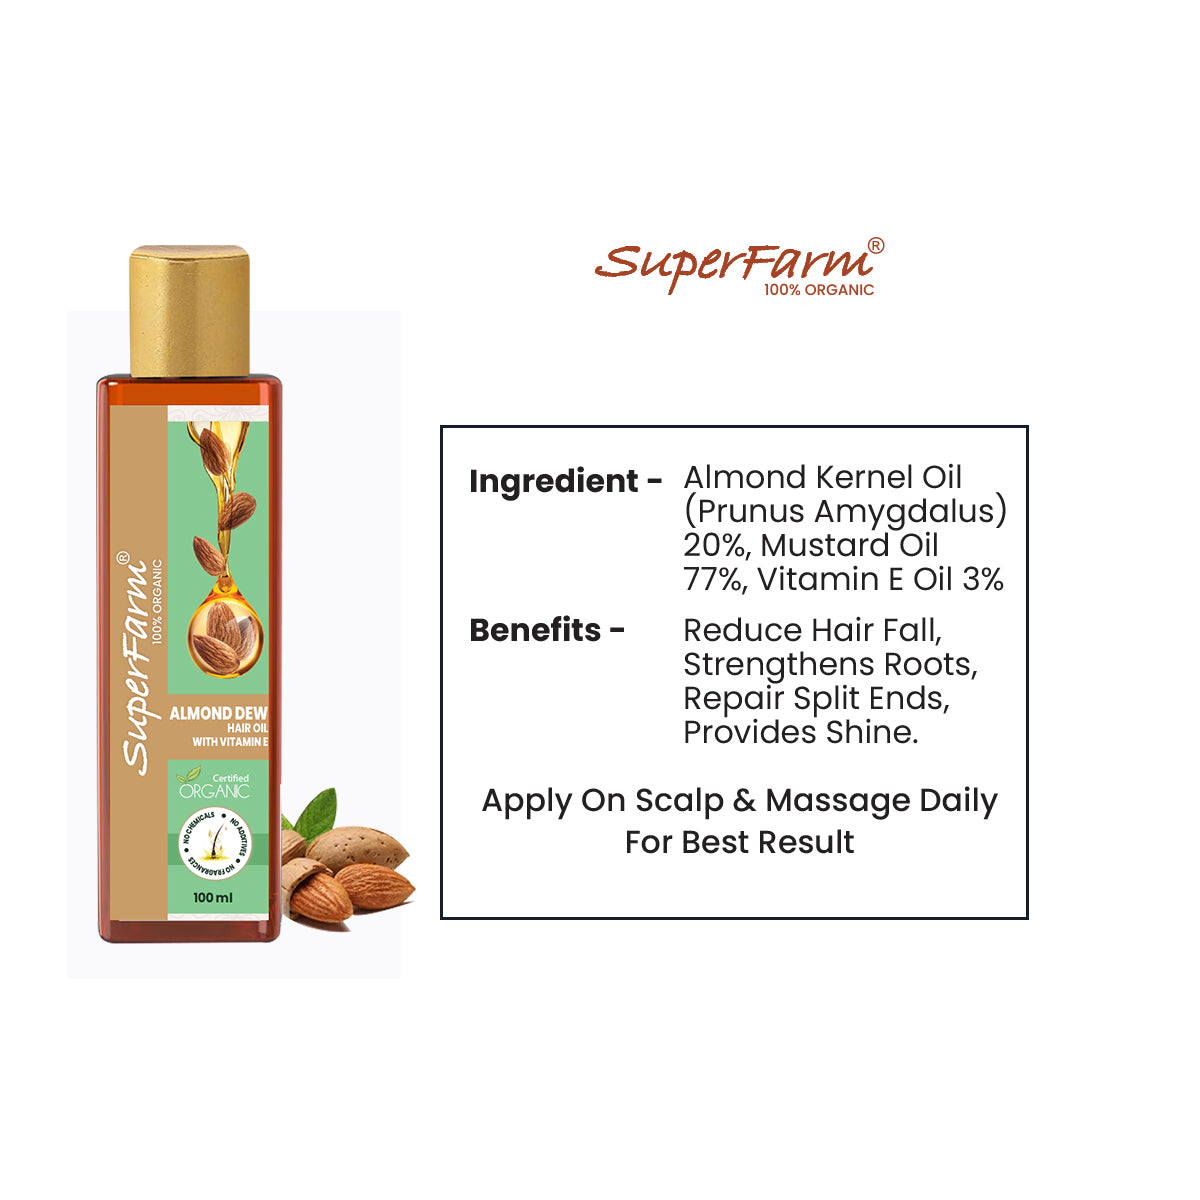 Superfarm Organic Almond Dew Hair Oil With Vitamin E